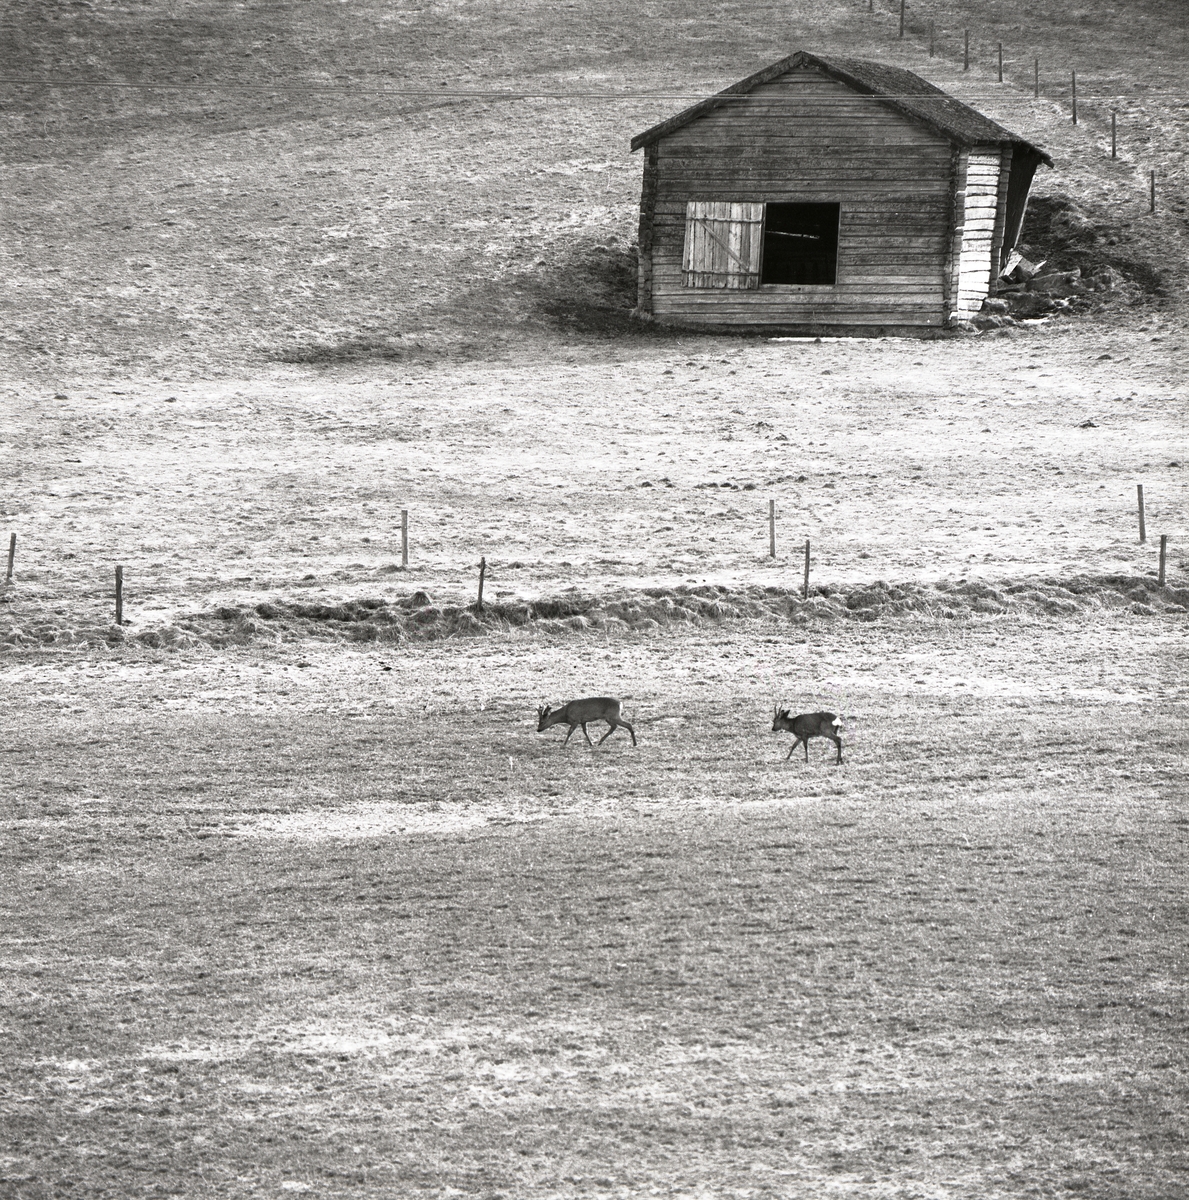 Två rådjur går över en åker med en lada i bakgrunden, Forsa 1971.